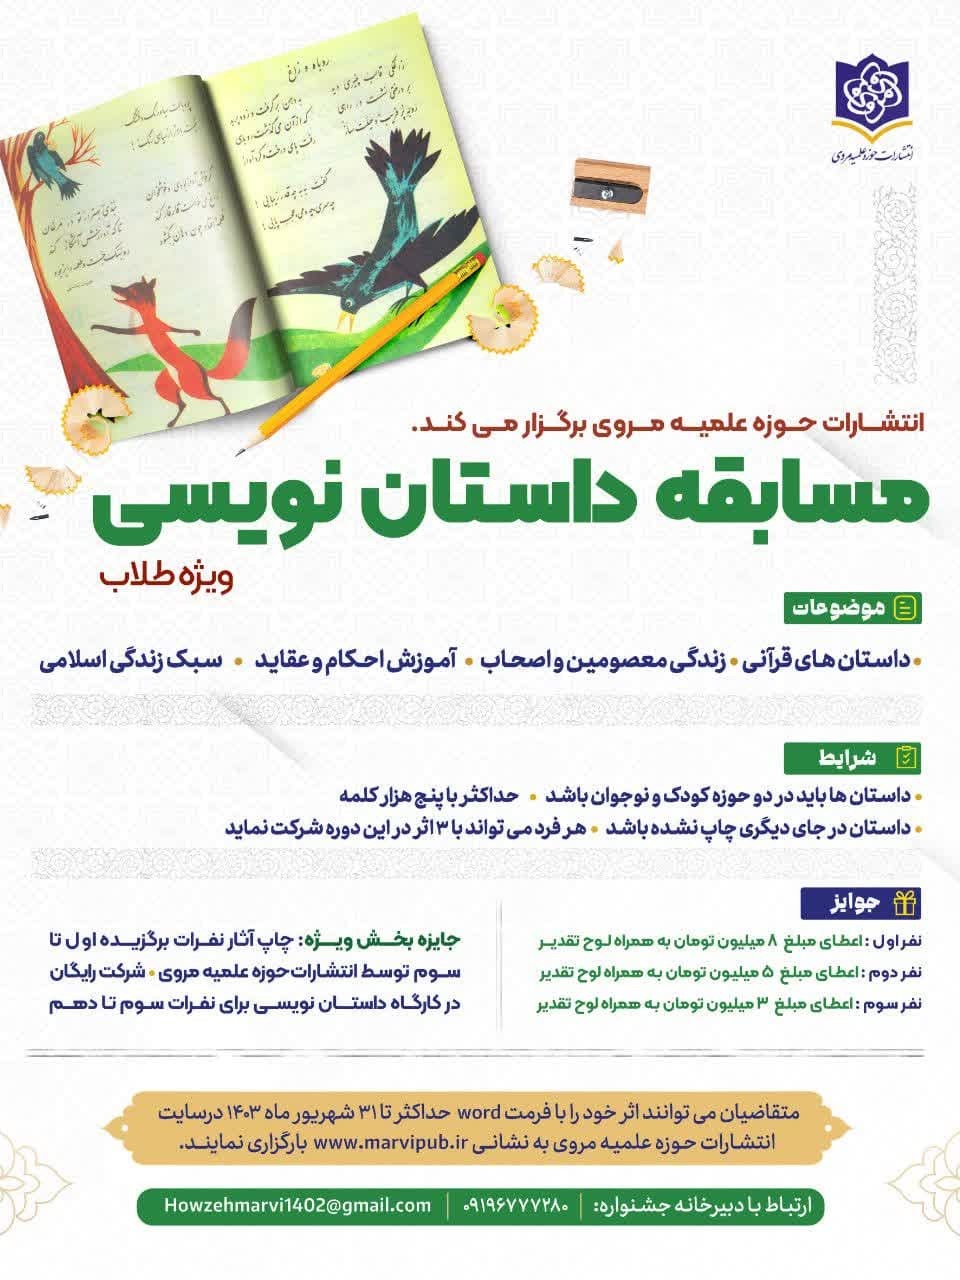 مسابقه داستان نویسی انتشارات حوزه علمیه مروی برگزار می شود